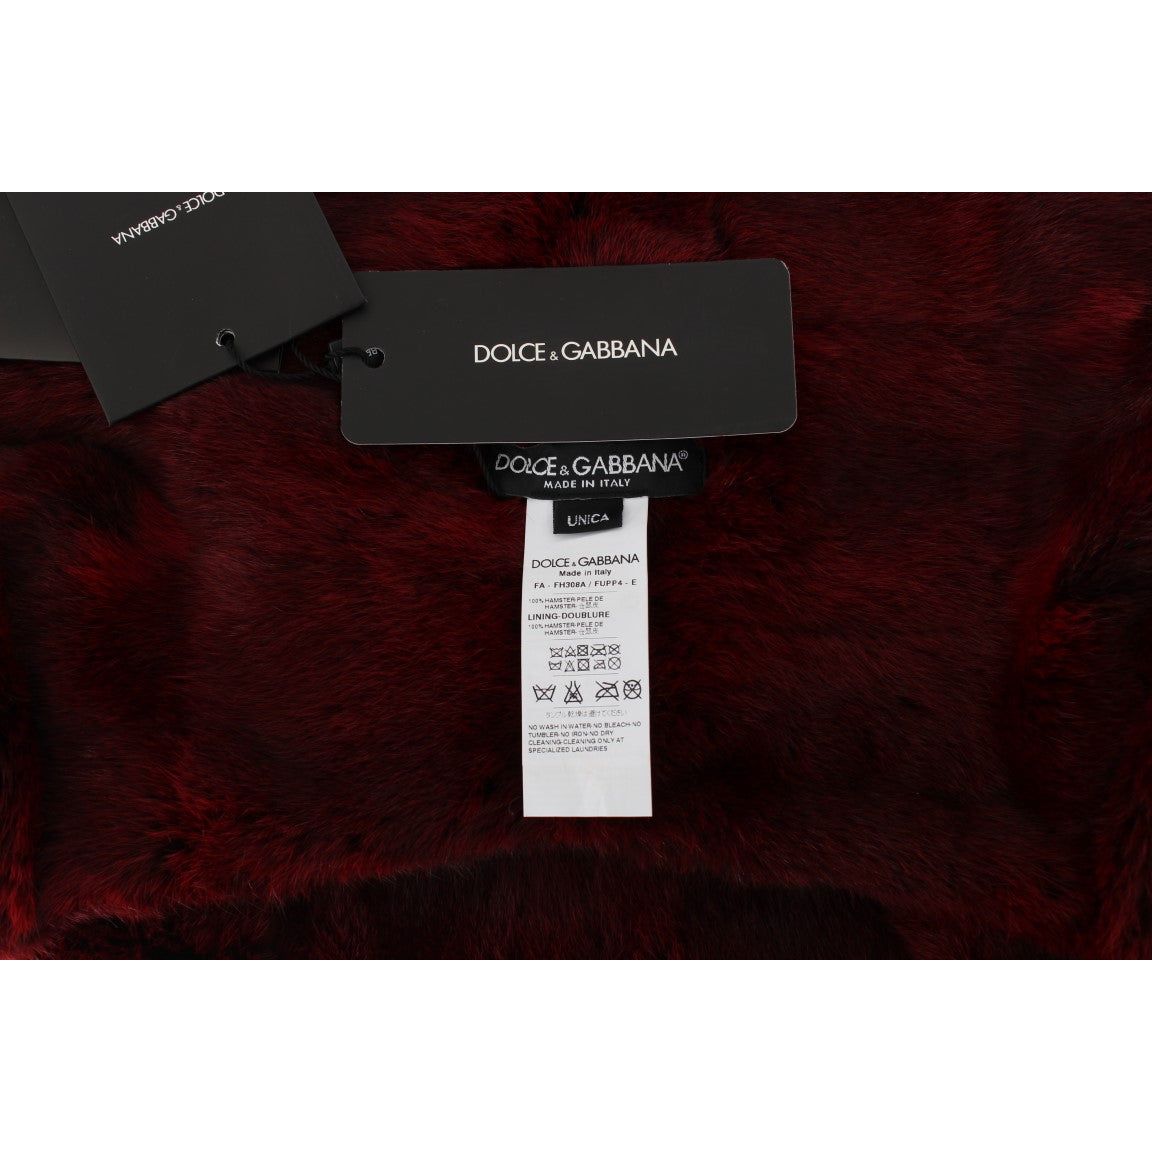 Dolce & Gabbana Luxurious Bordeaux Fur Hooded Scarf Wrap Hood Scarf bordeaux-hamster-fur-crochet-hood-scarf-hat 306431-bordeaux-hamster-fur-crochet-hood-scarf-hat-5.jpg